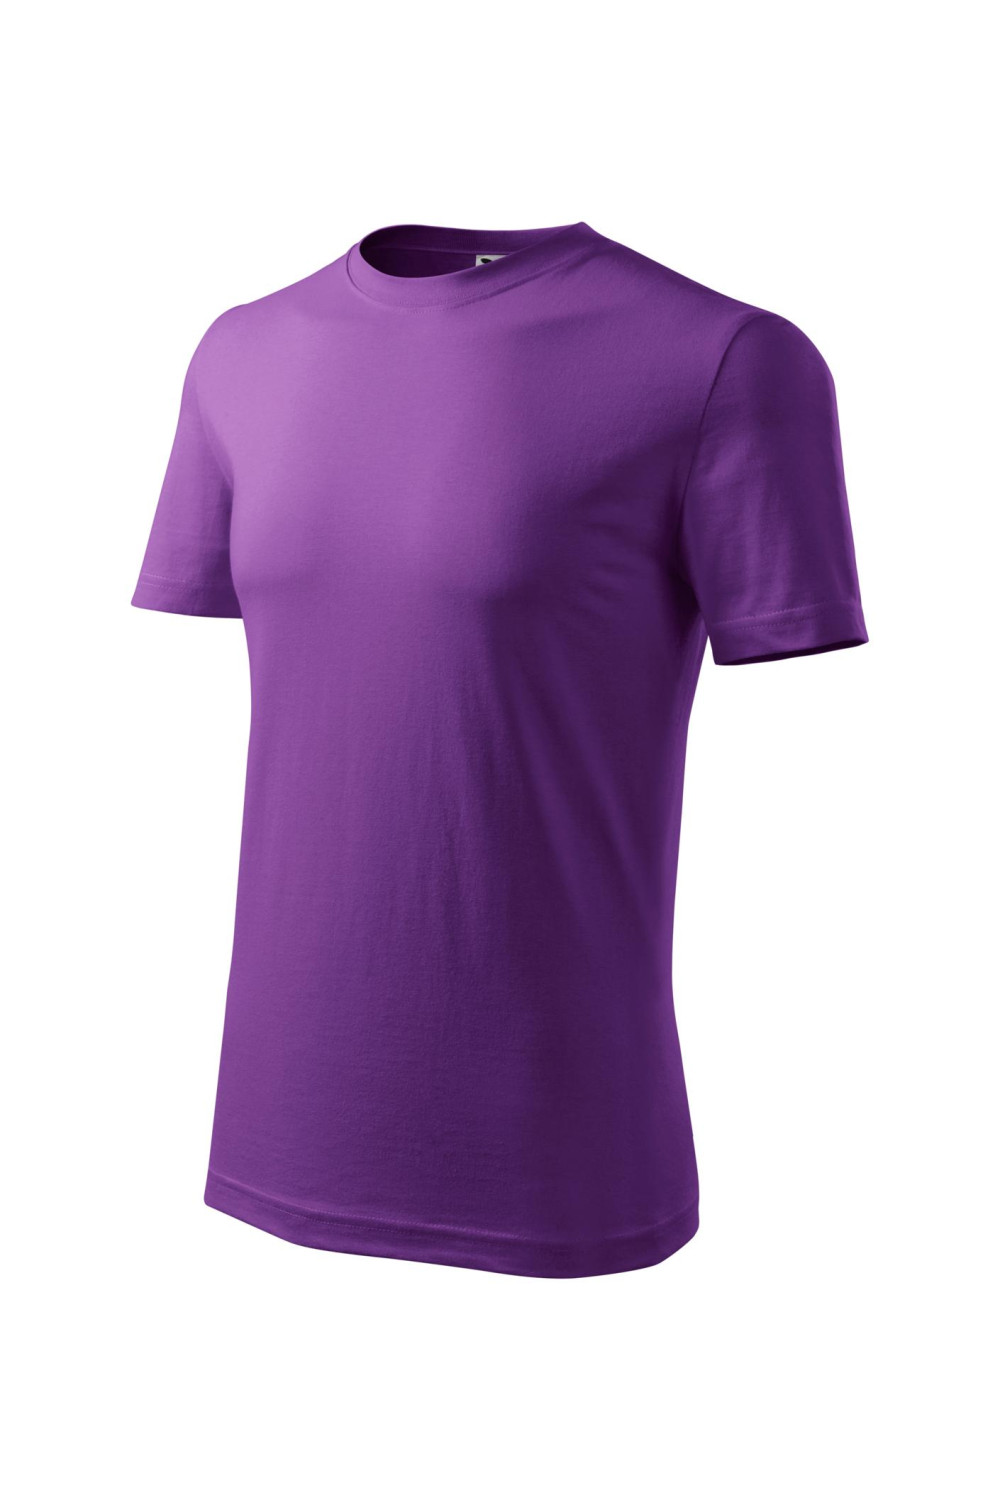 Koszulka męska 100% bawełna CLASSIC 132 fioletowy